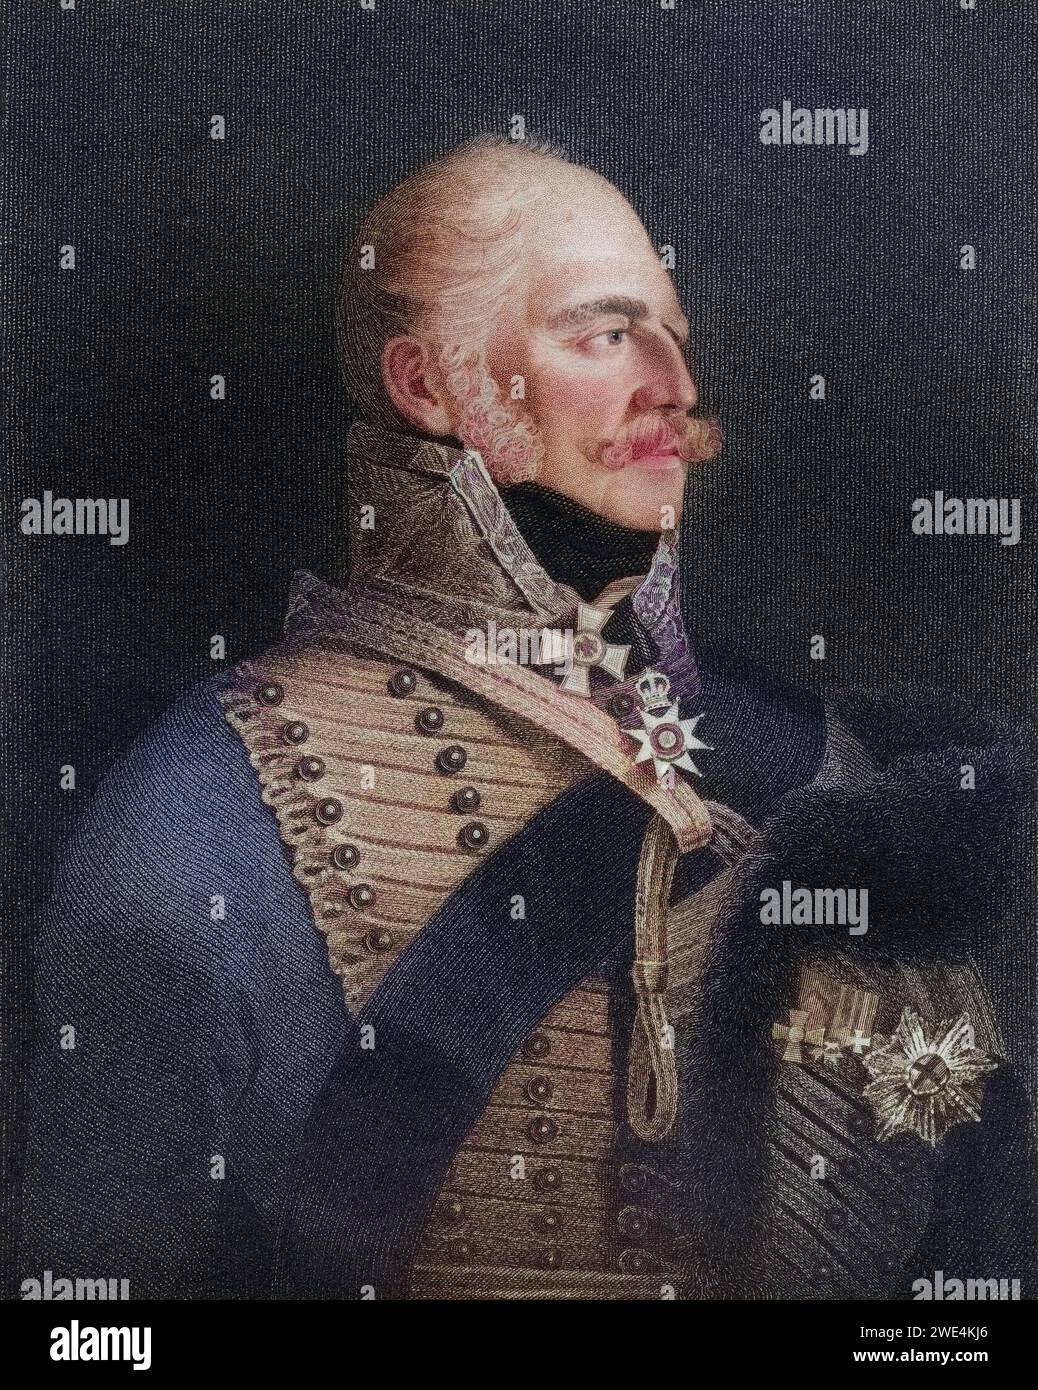 Fürst Ernst Augustus 1771 bis 1851 Herzog von Cumberland und Tiviotdale König von Hannover Sohn von Georg III Von England, Historisch, digital restaurierte Reproduktion von einer Vorlage aus dem 19. Jahrhundert, Datum nicht angegeben Stockfoto